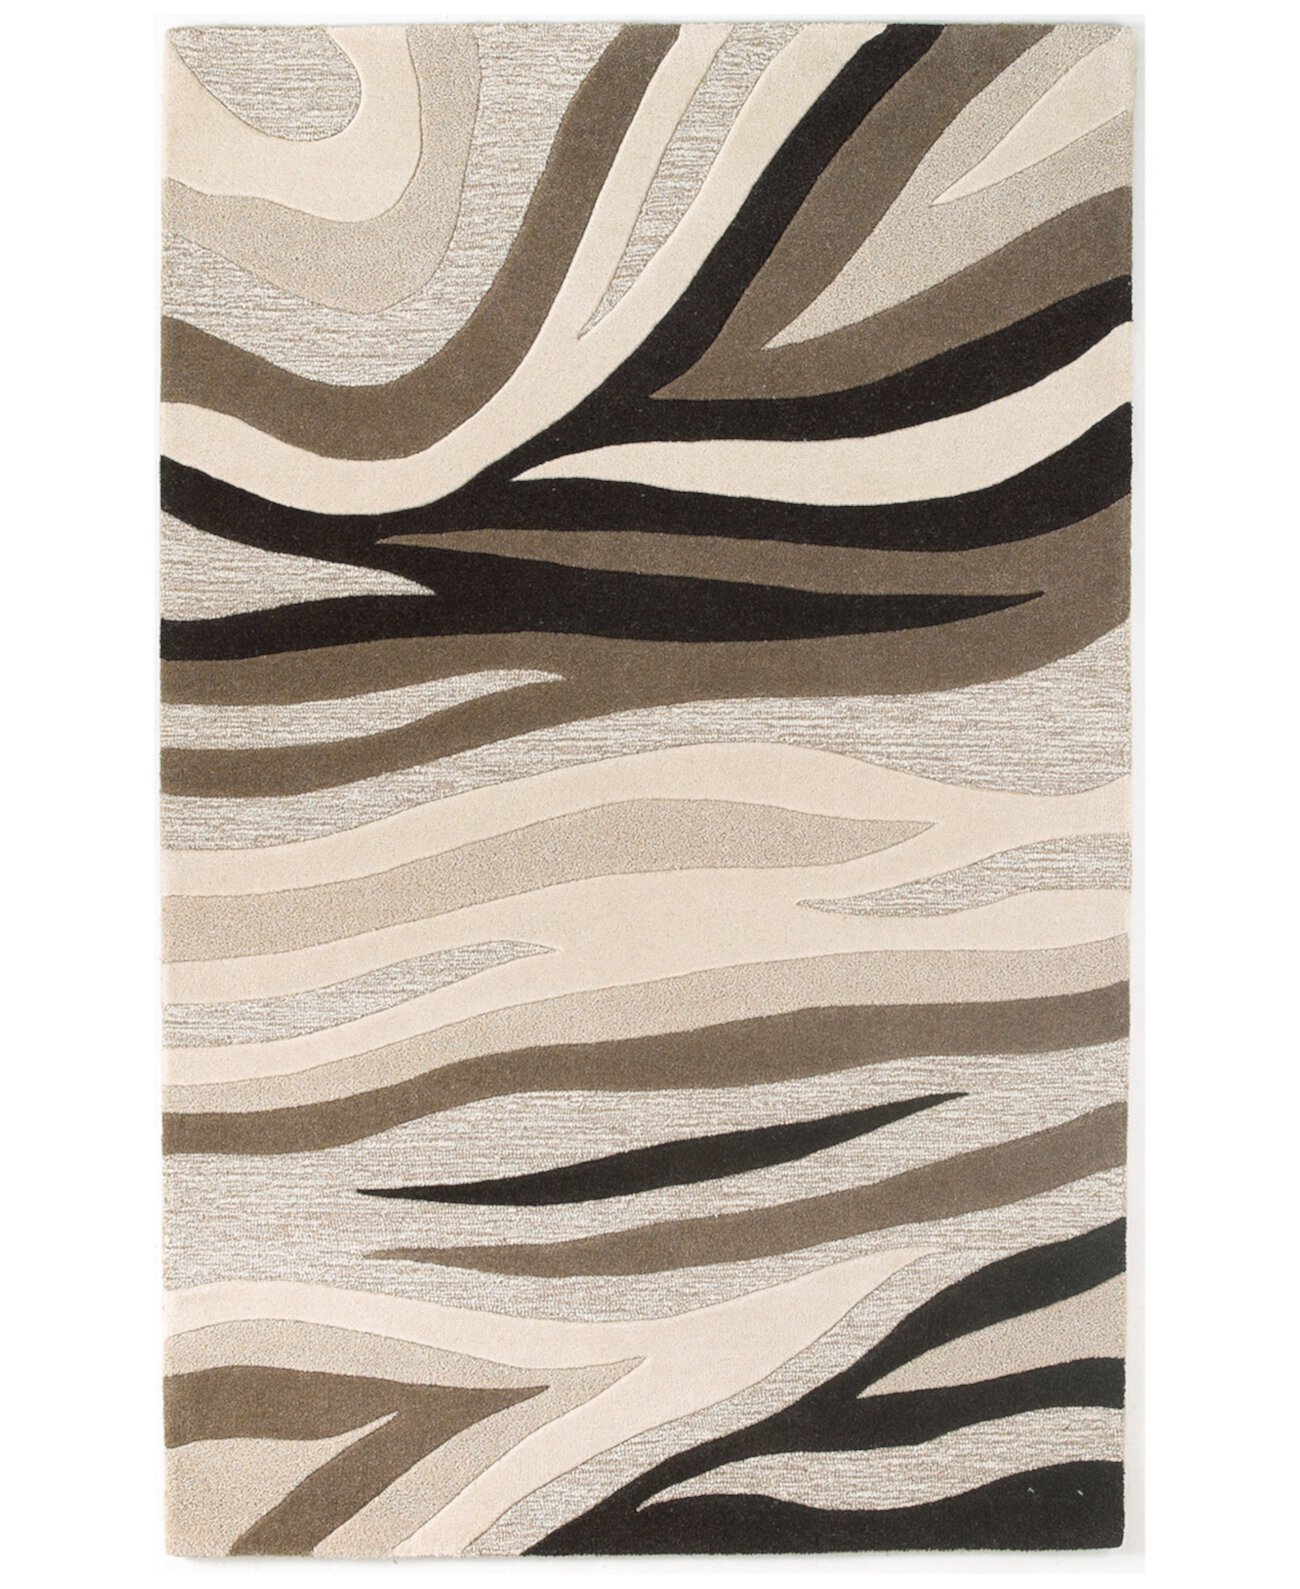 Eternity Sandstorm 1083 Натуральный коврик размером 3 х 5 футов 3 дюйма KAS New York